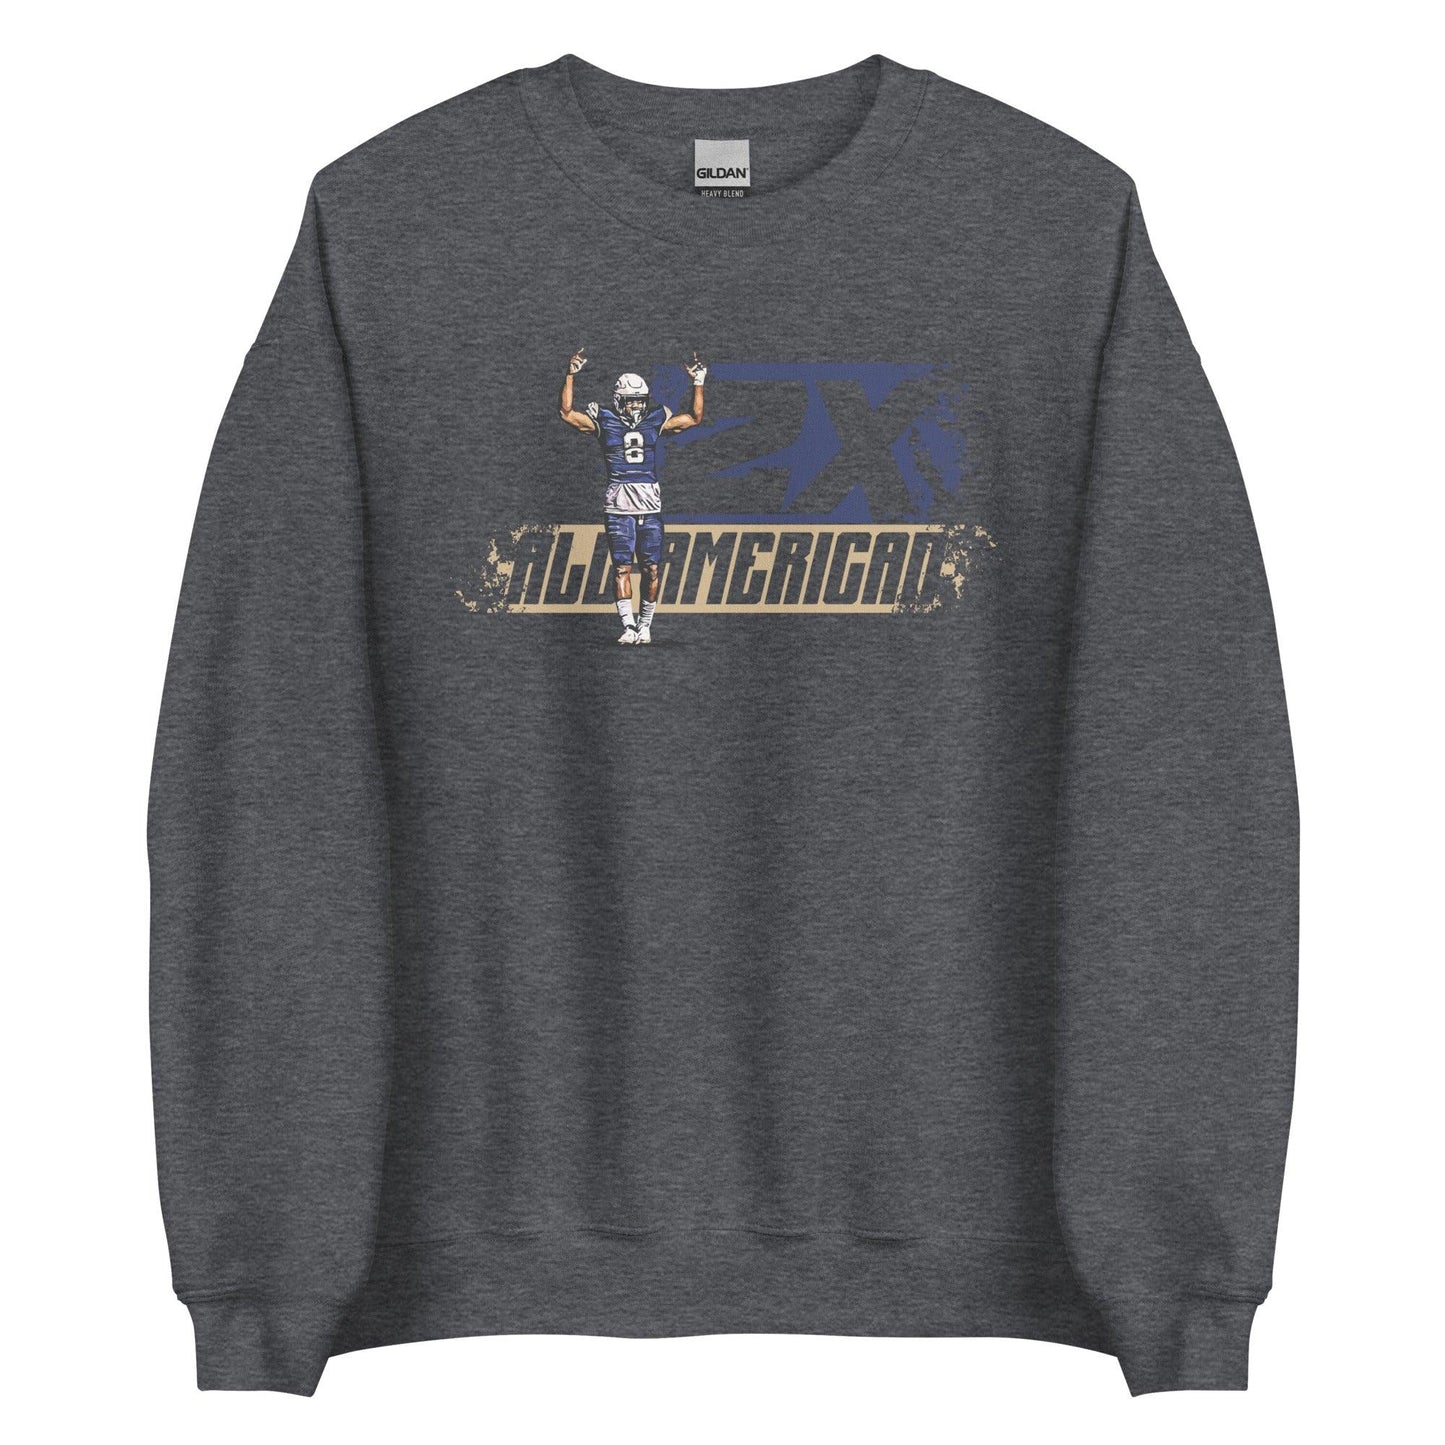 Josiah Silver "Dominance" Sweatshirt - Fan Arch